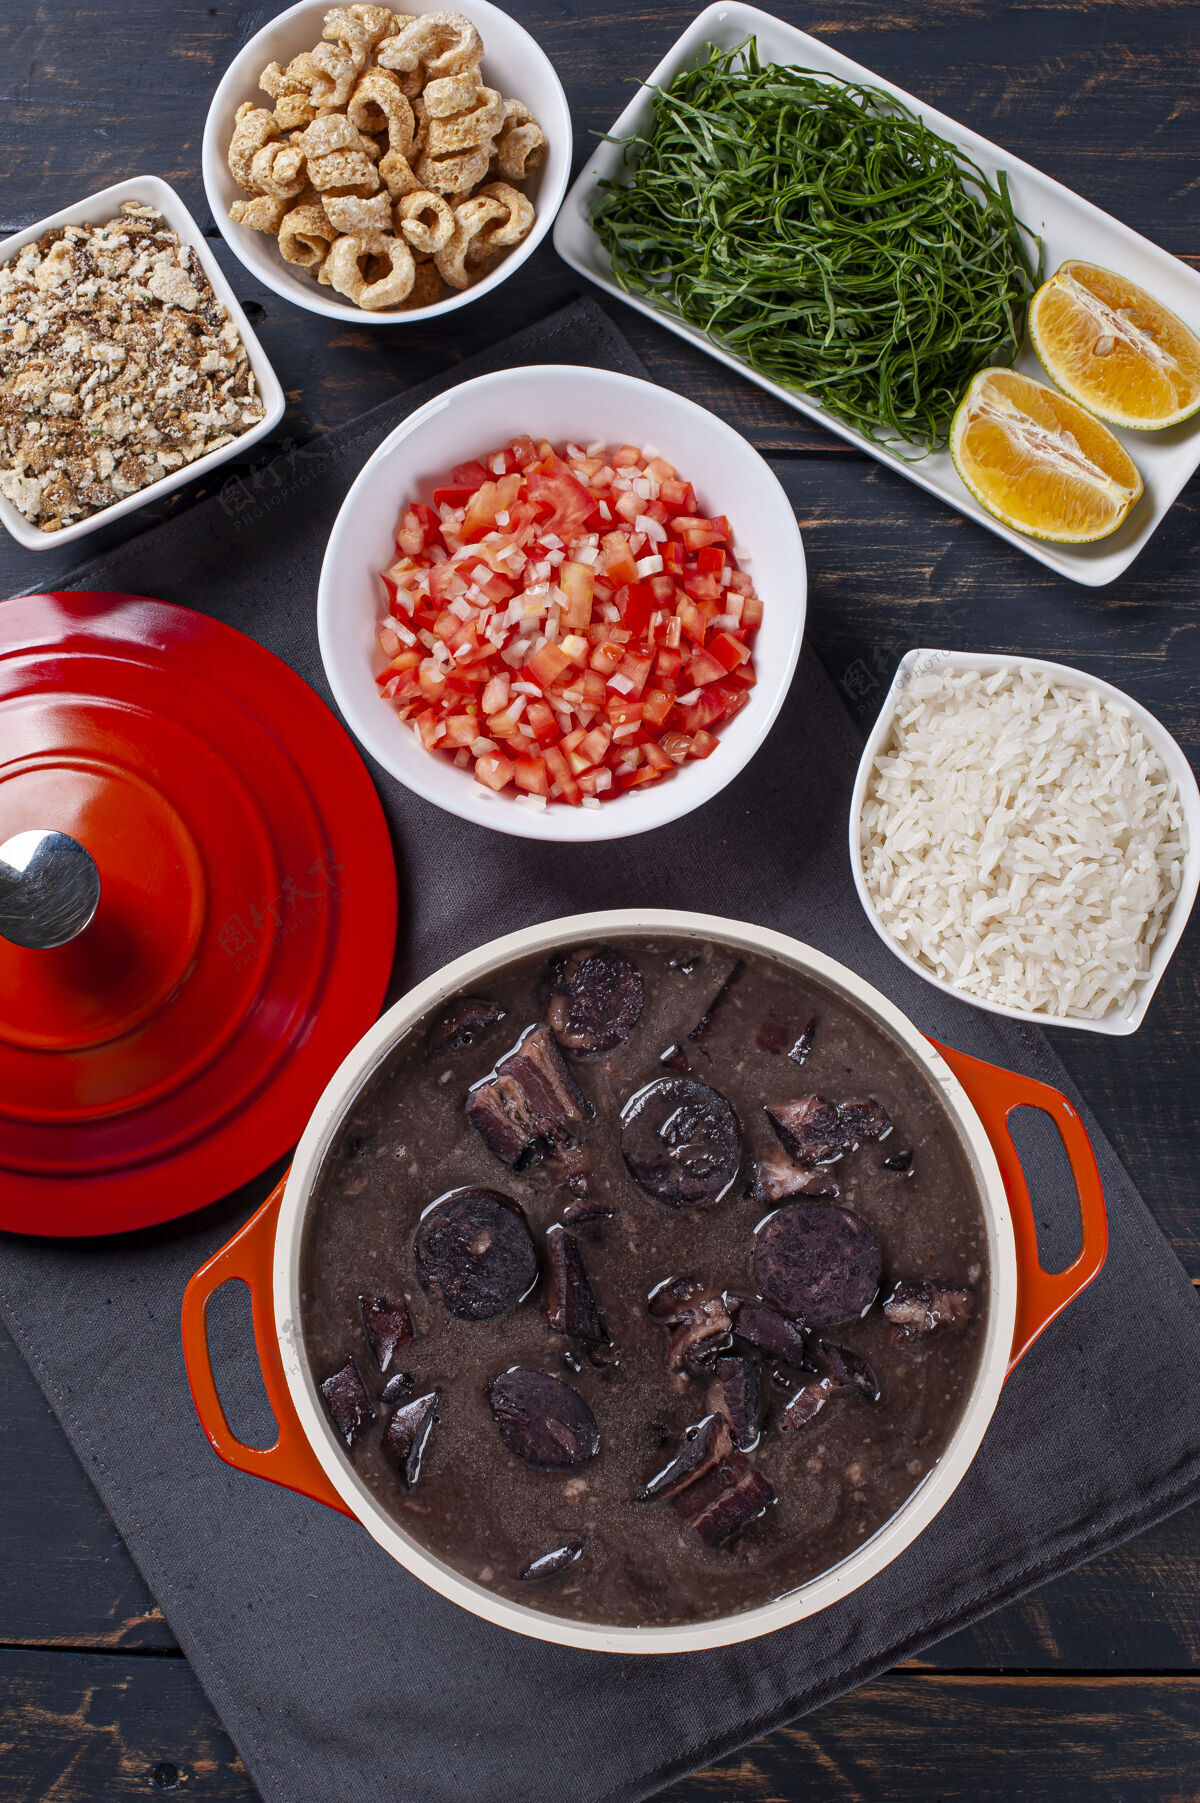 豆类典型的巴西菜叫feijoada.制造配黑豆 猪肉和土豆香肠.上衣查看木头米饭乡村的